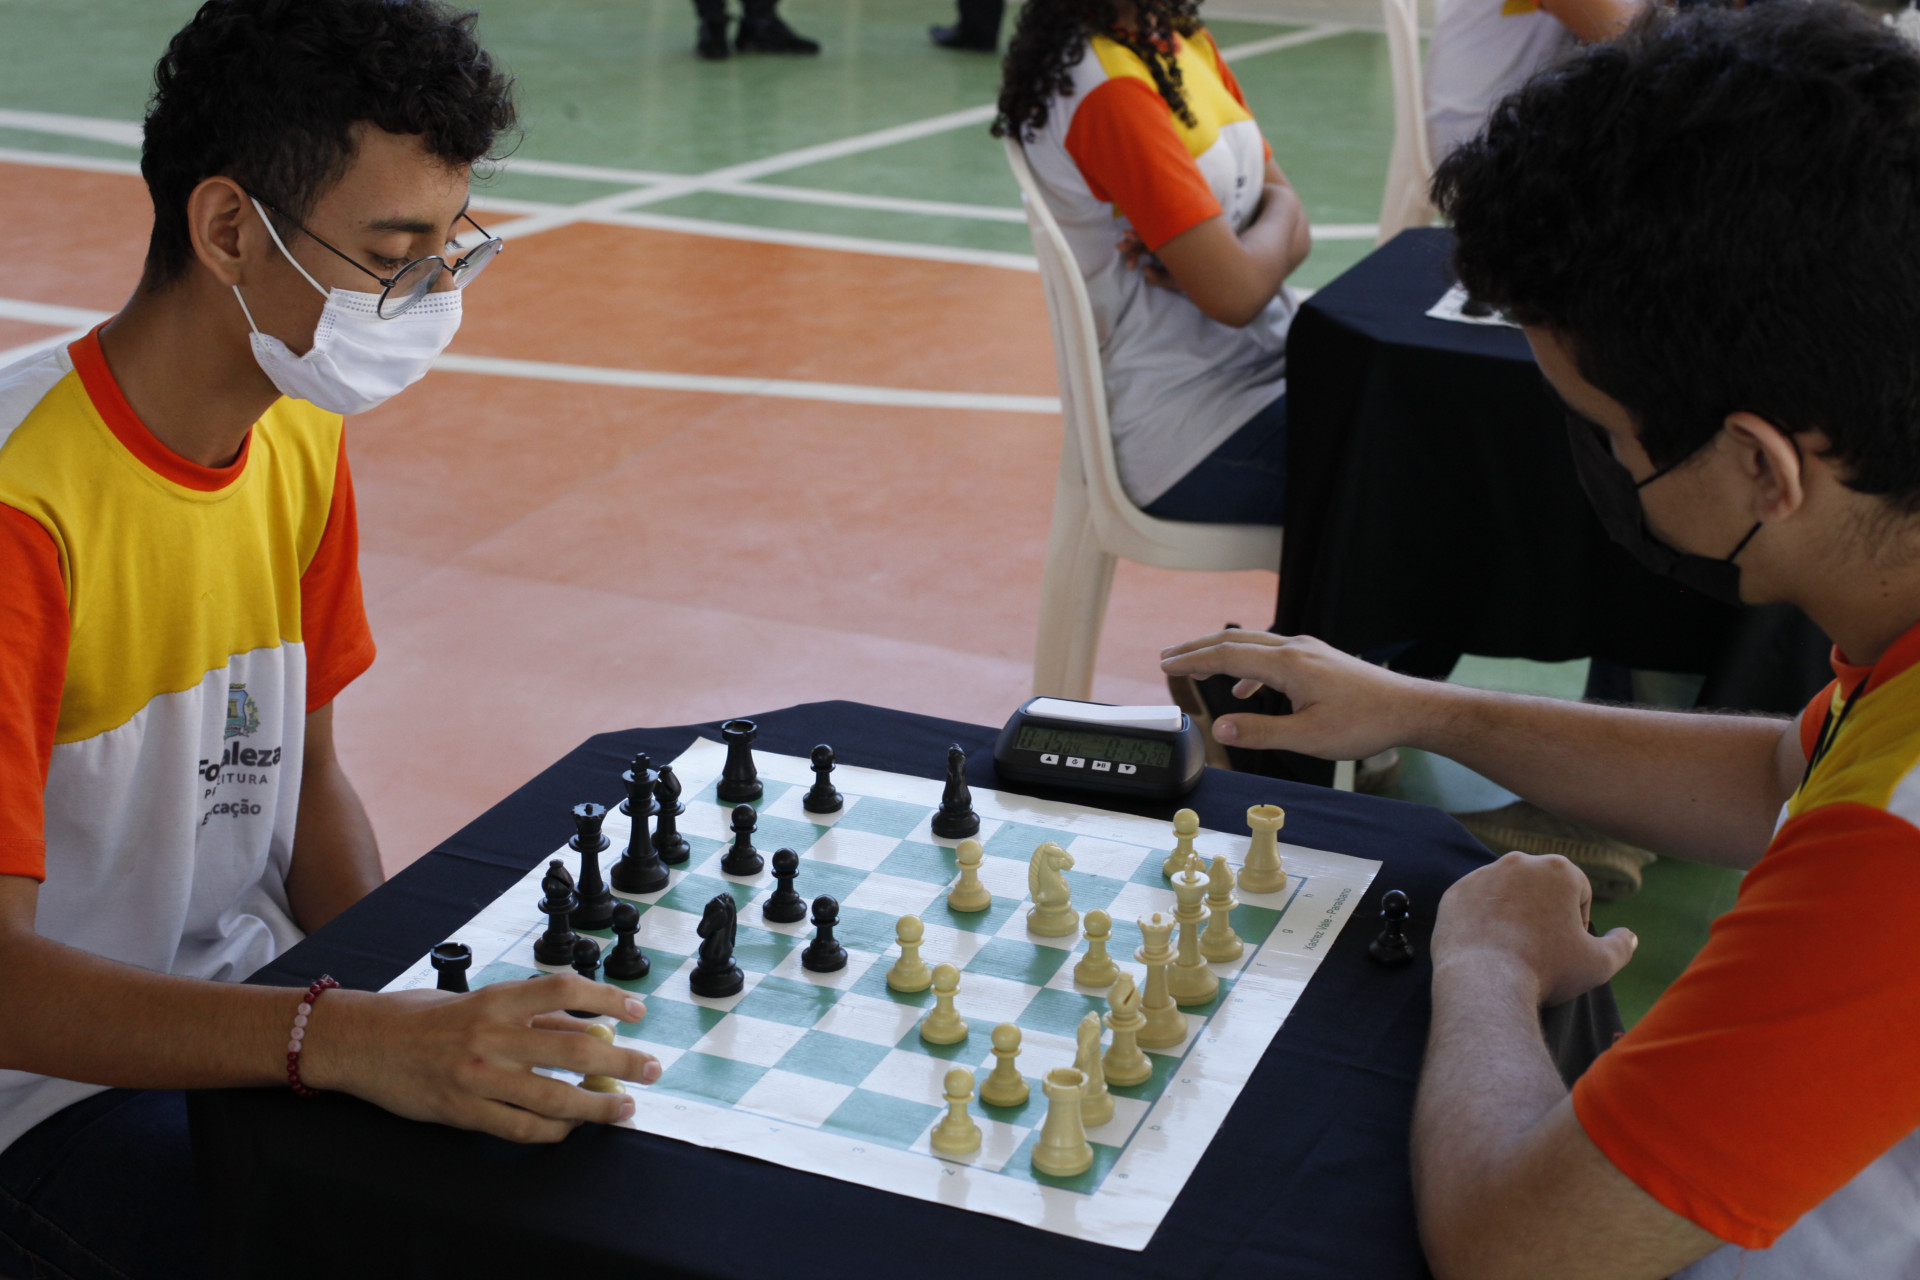 Clube de Xadrez do IFRS ministrará aula de xadrez à comunidade